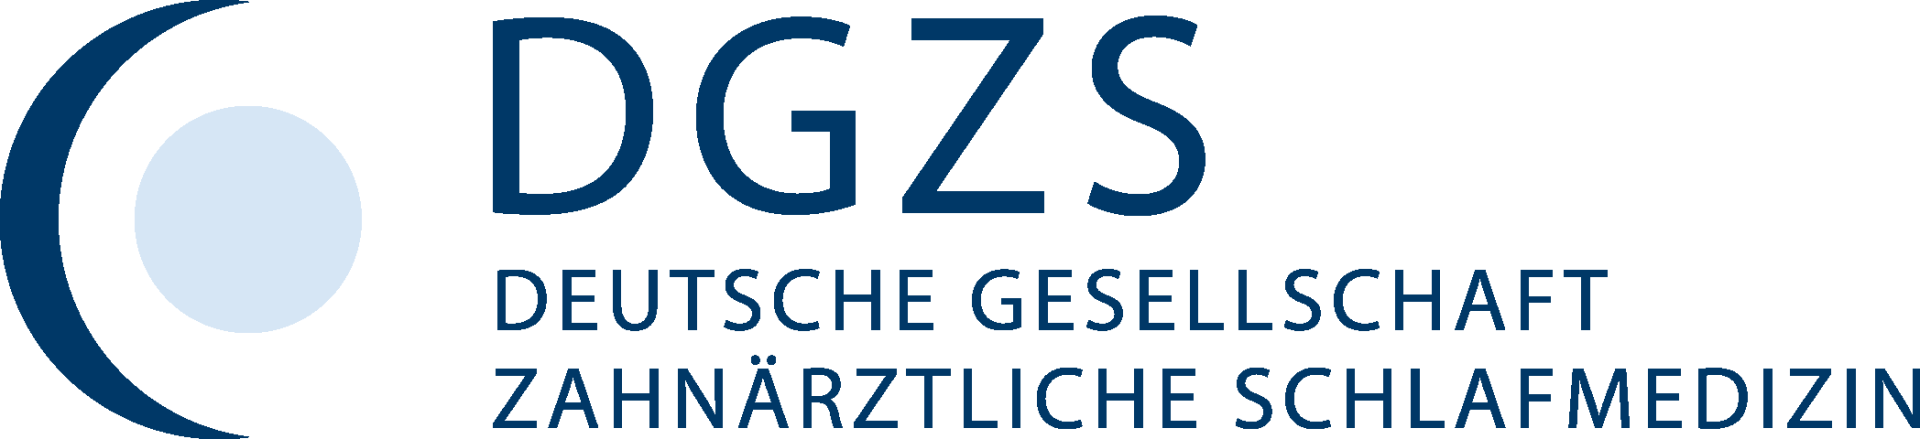 DGZS_Logo